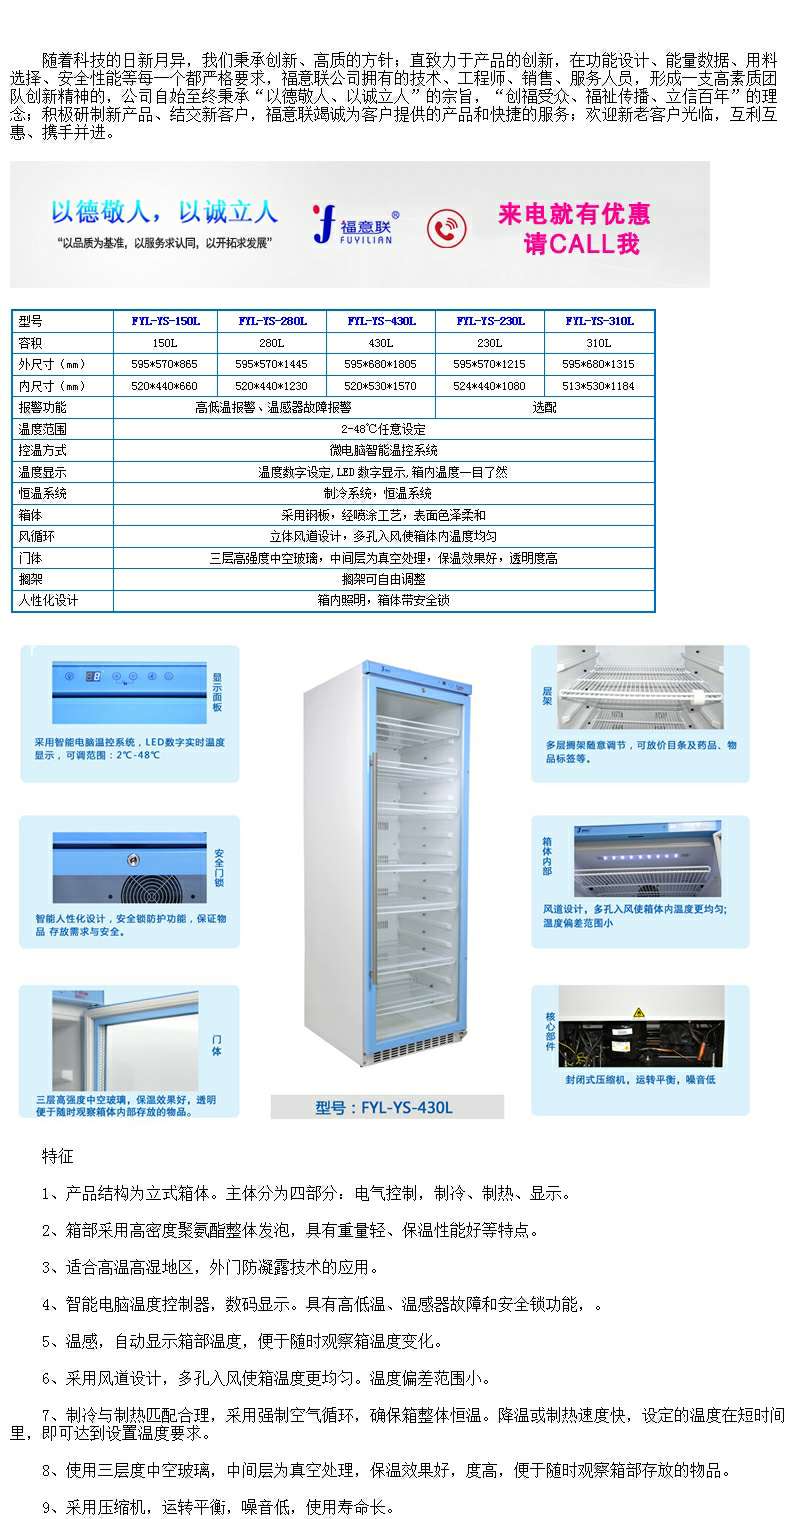 保冷柜（嵌入墙体）有效容积：≥280L